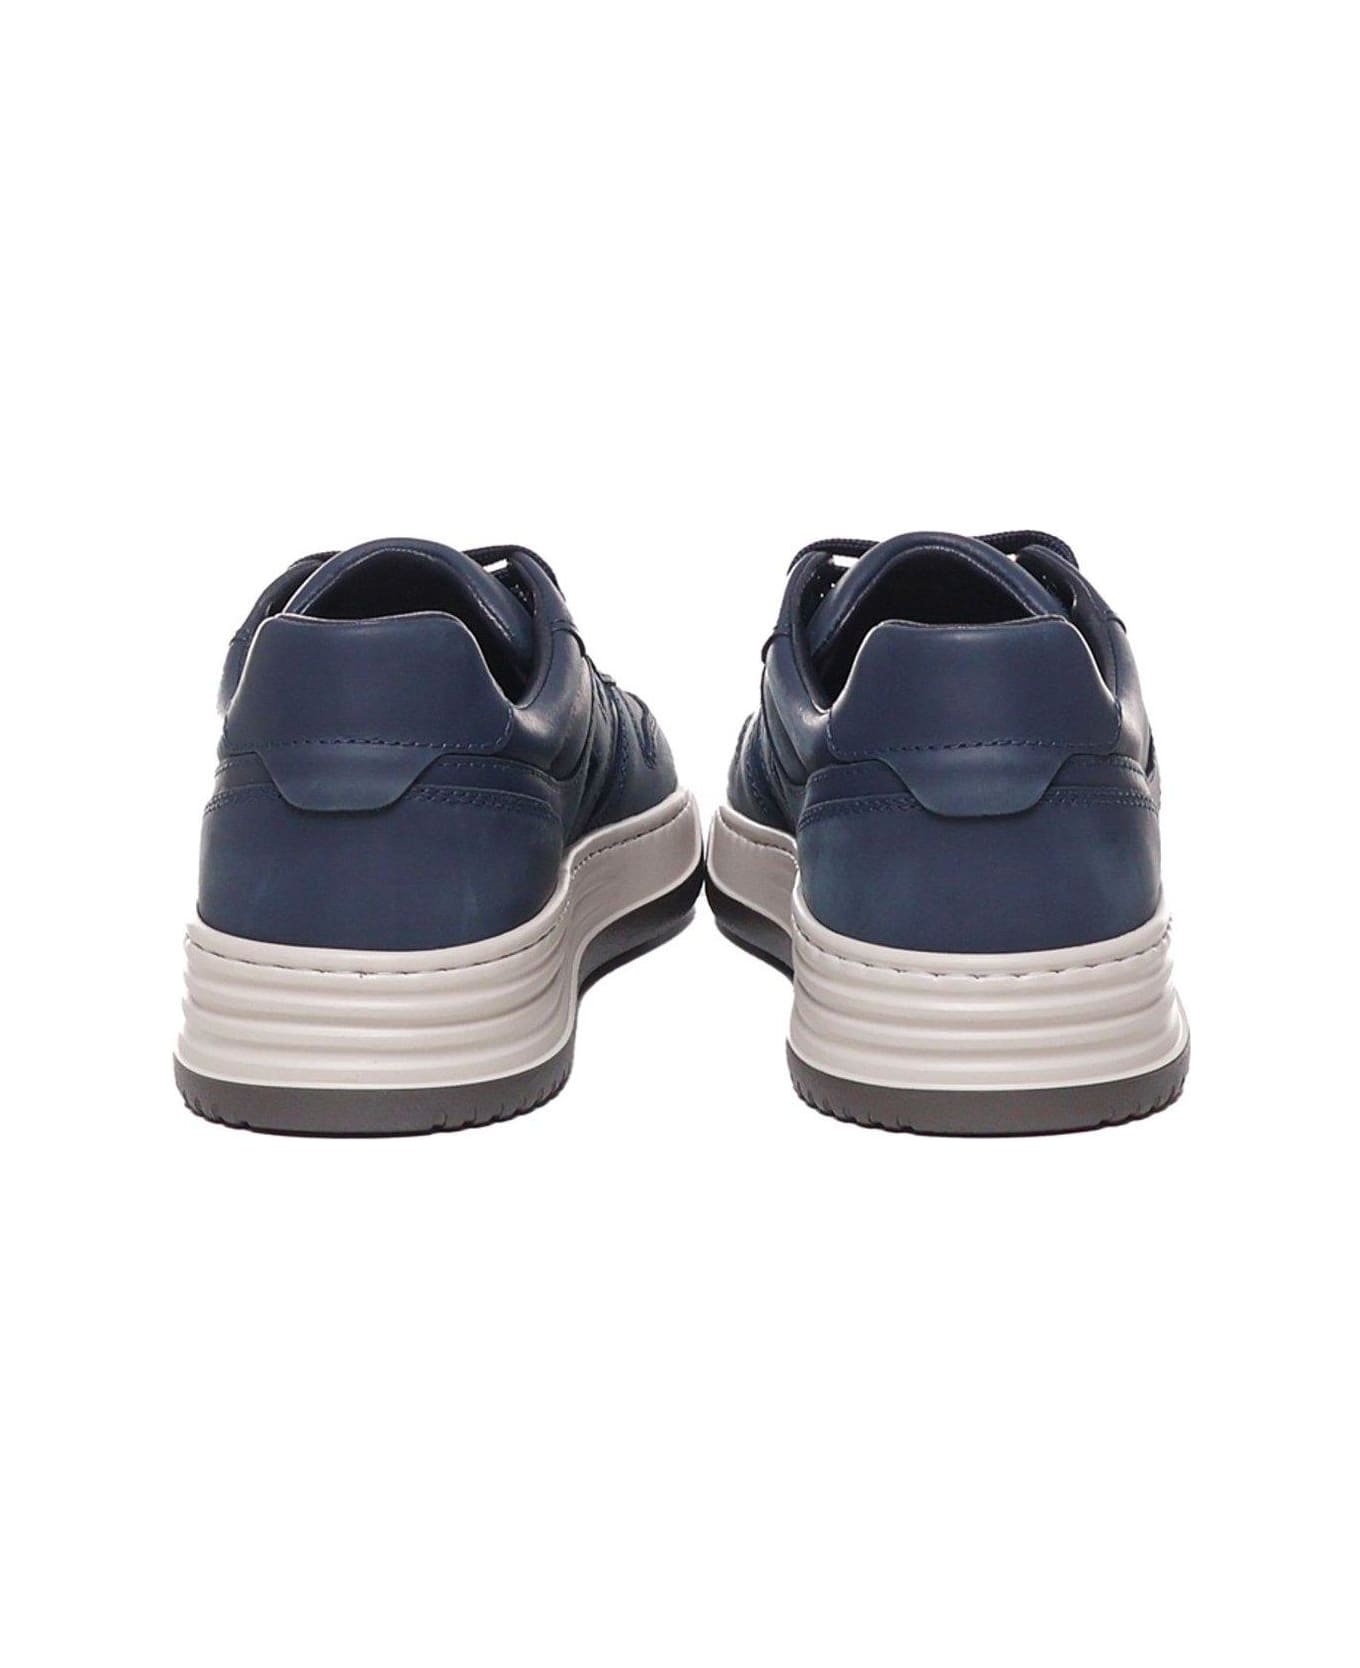 Hogan Sneakers H630 - Blu スニーカー